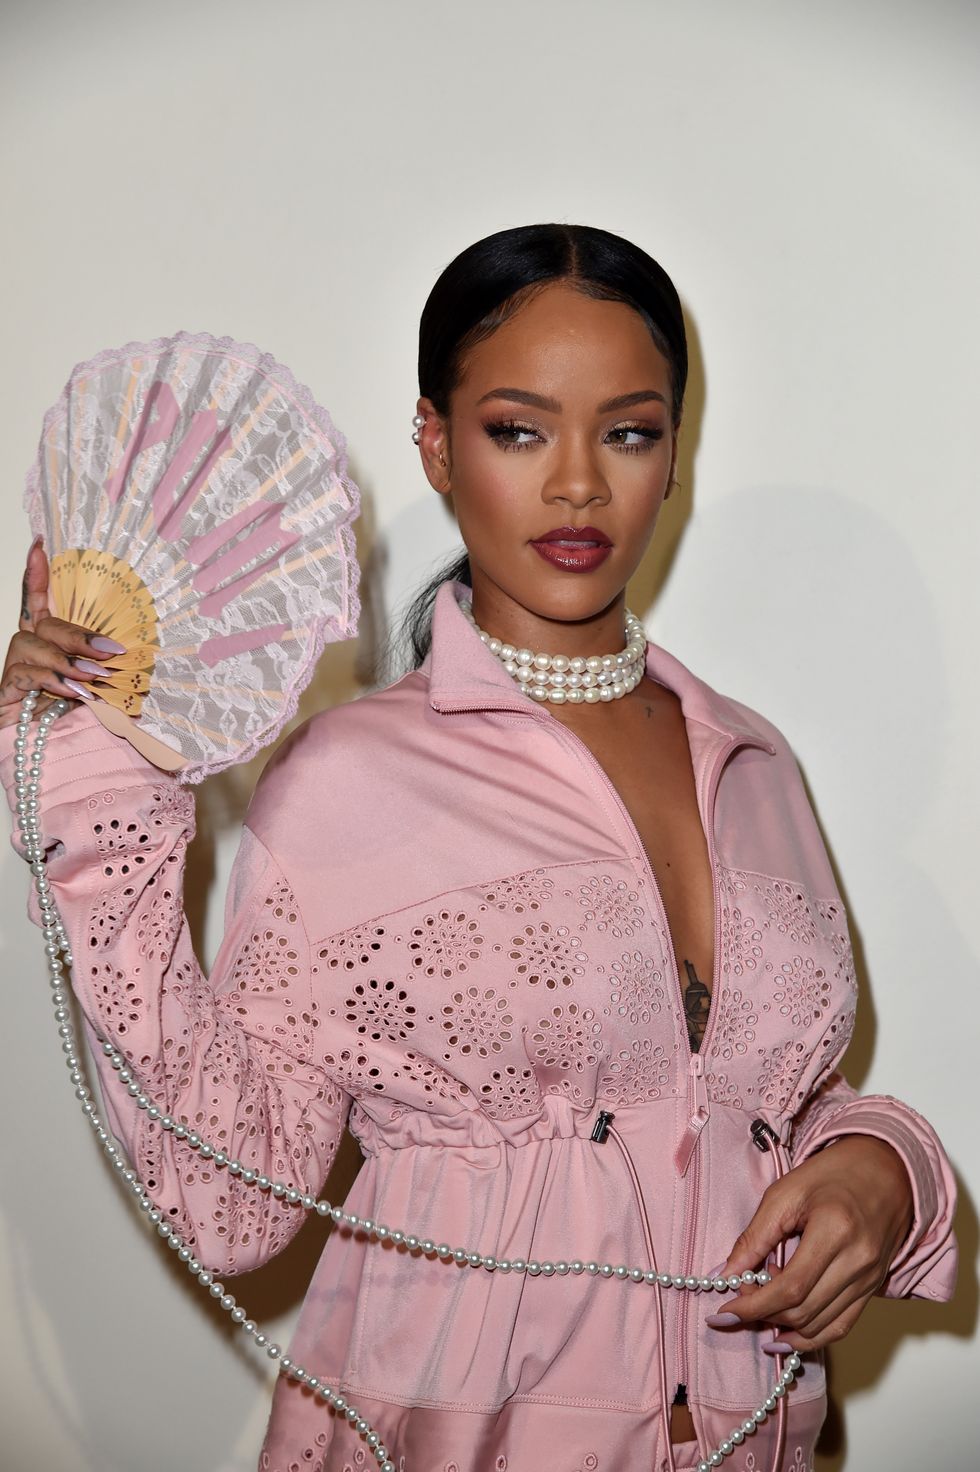 Rihanna's Fenty x Puma Spring 2017 Show at Paris Fashion Week